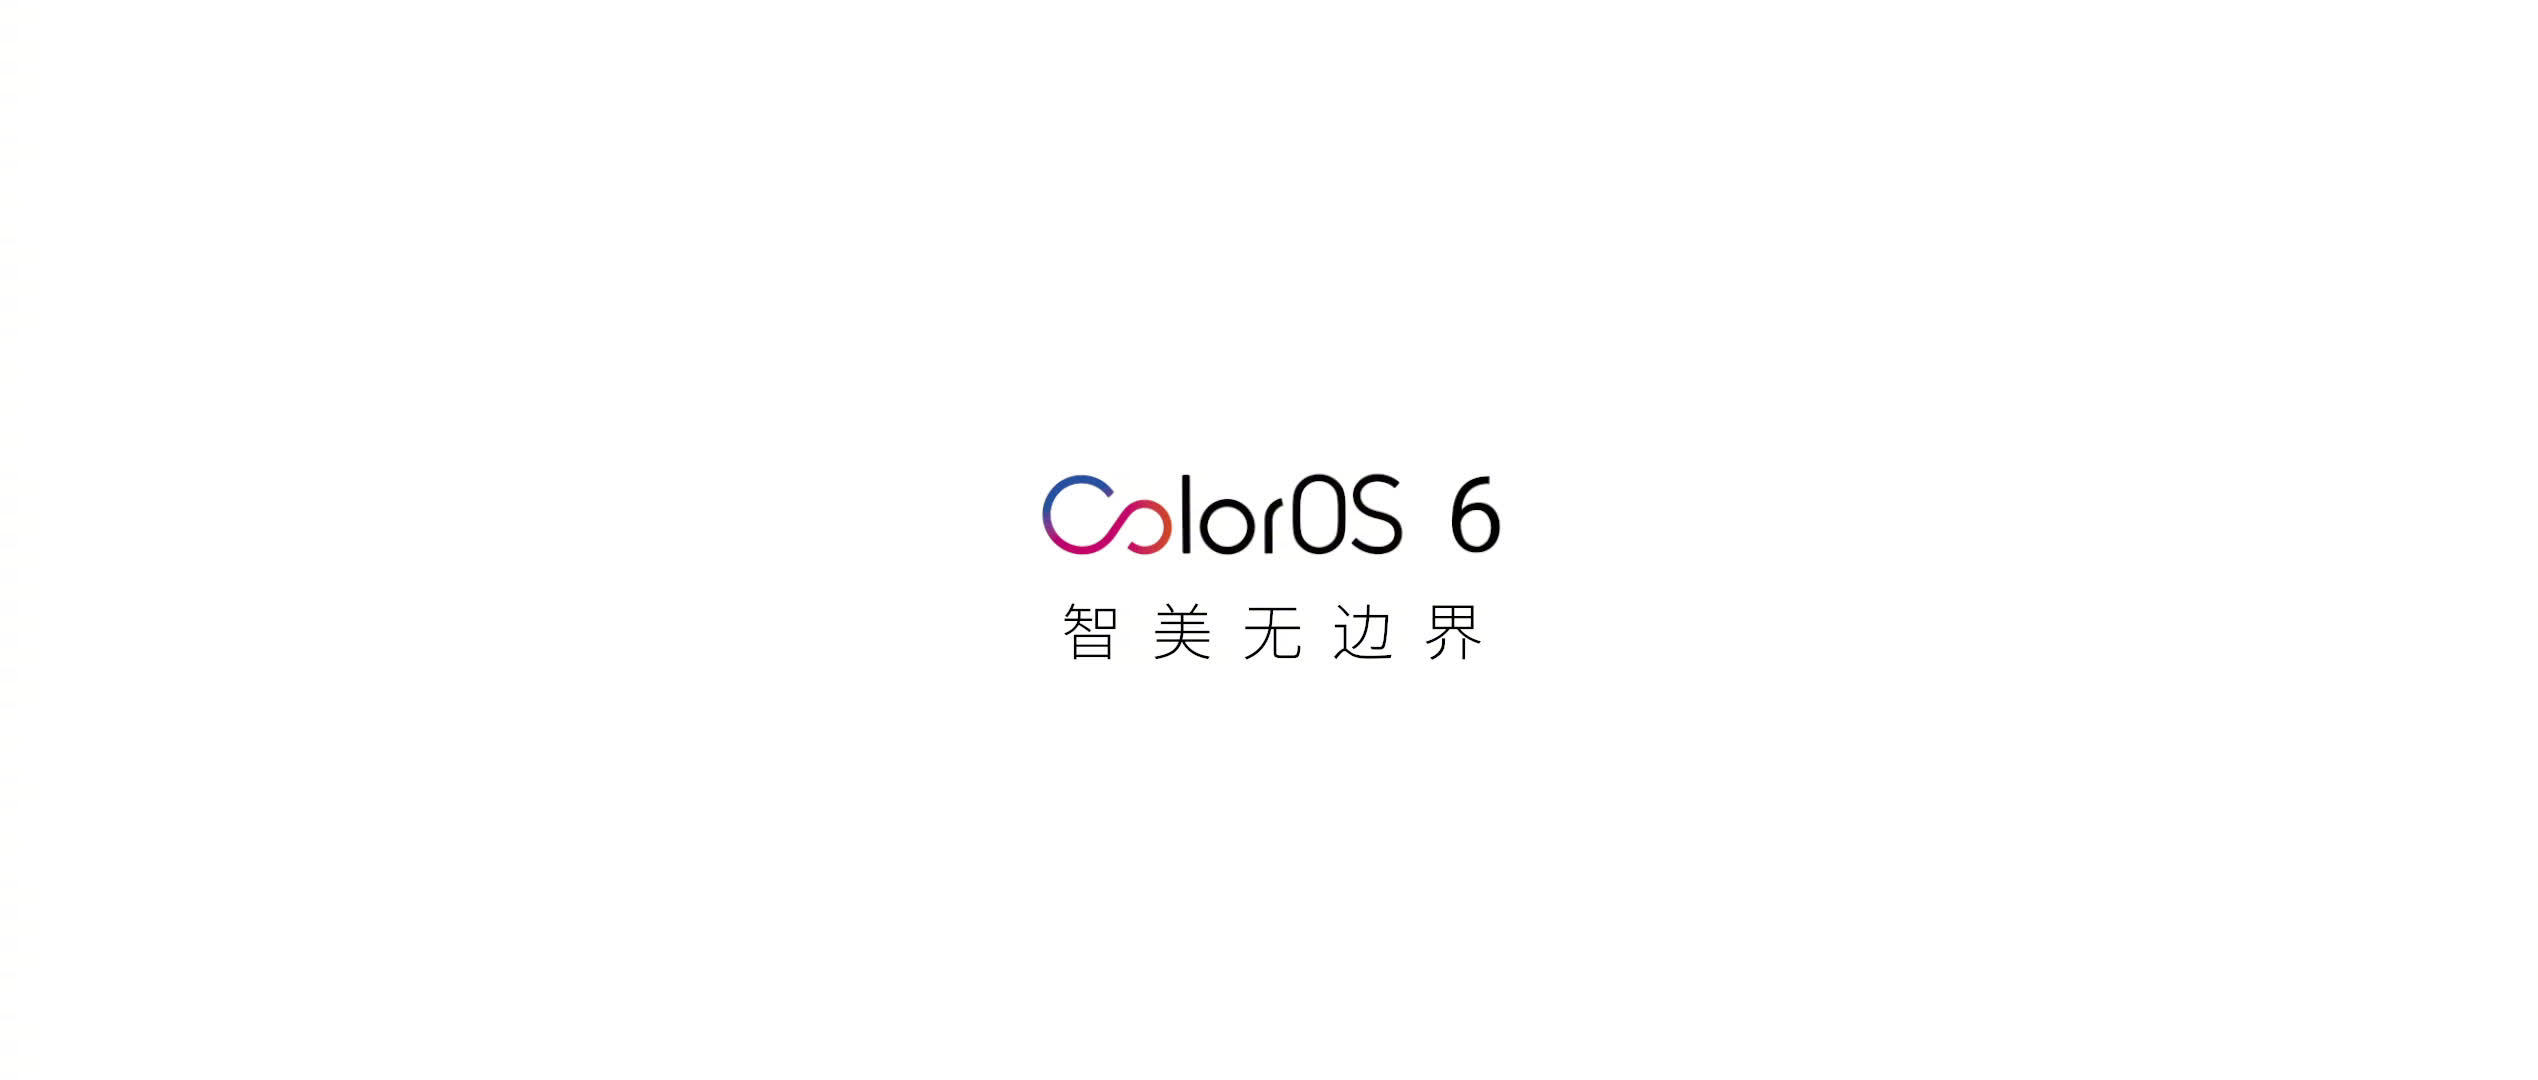 Oppo Color OS 6 lanserade; Kassa på nya funktioner och stödda enheter. 1